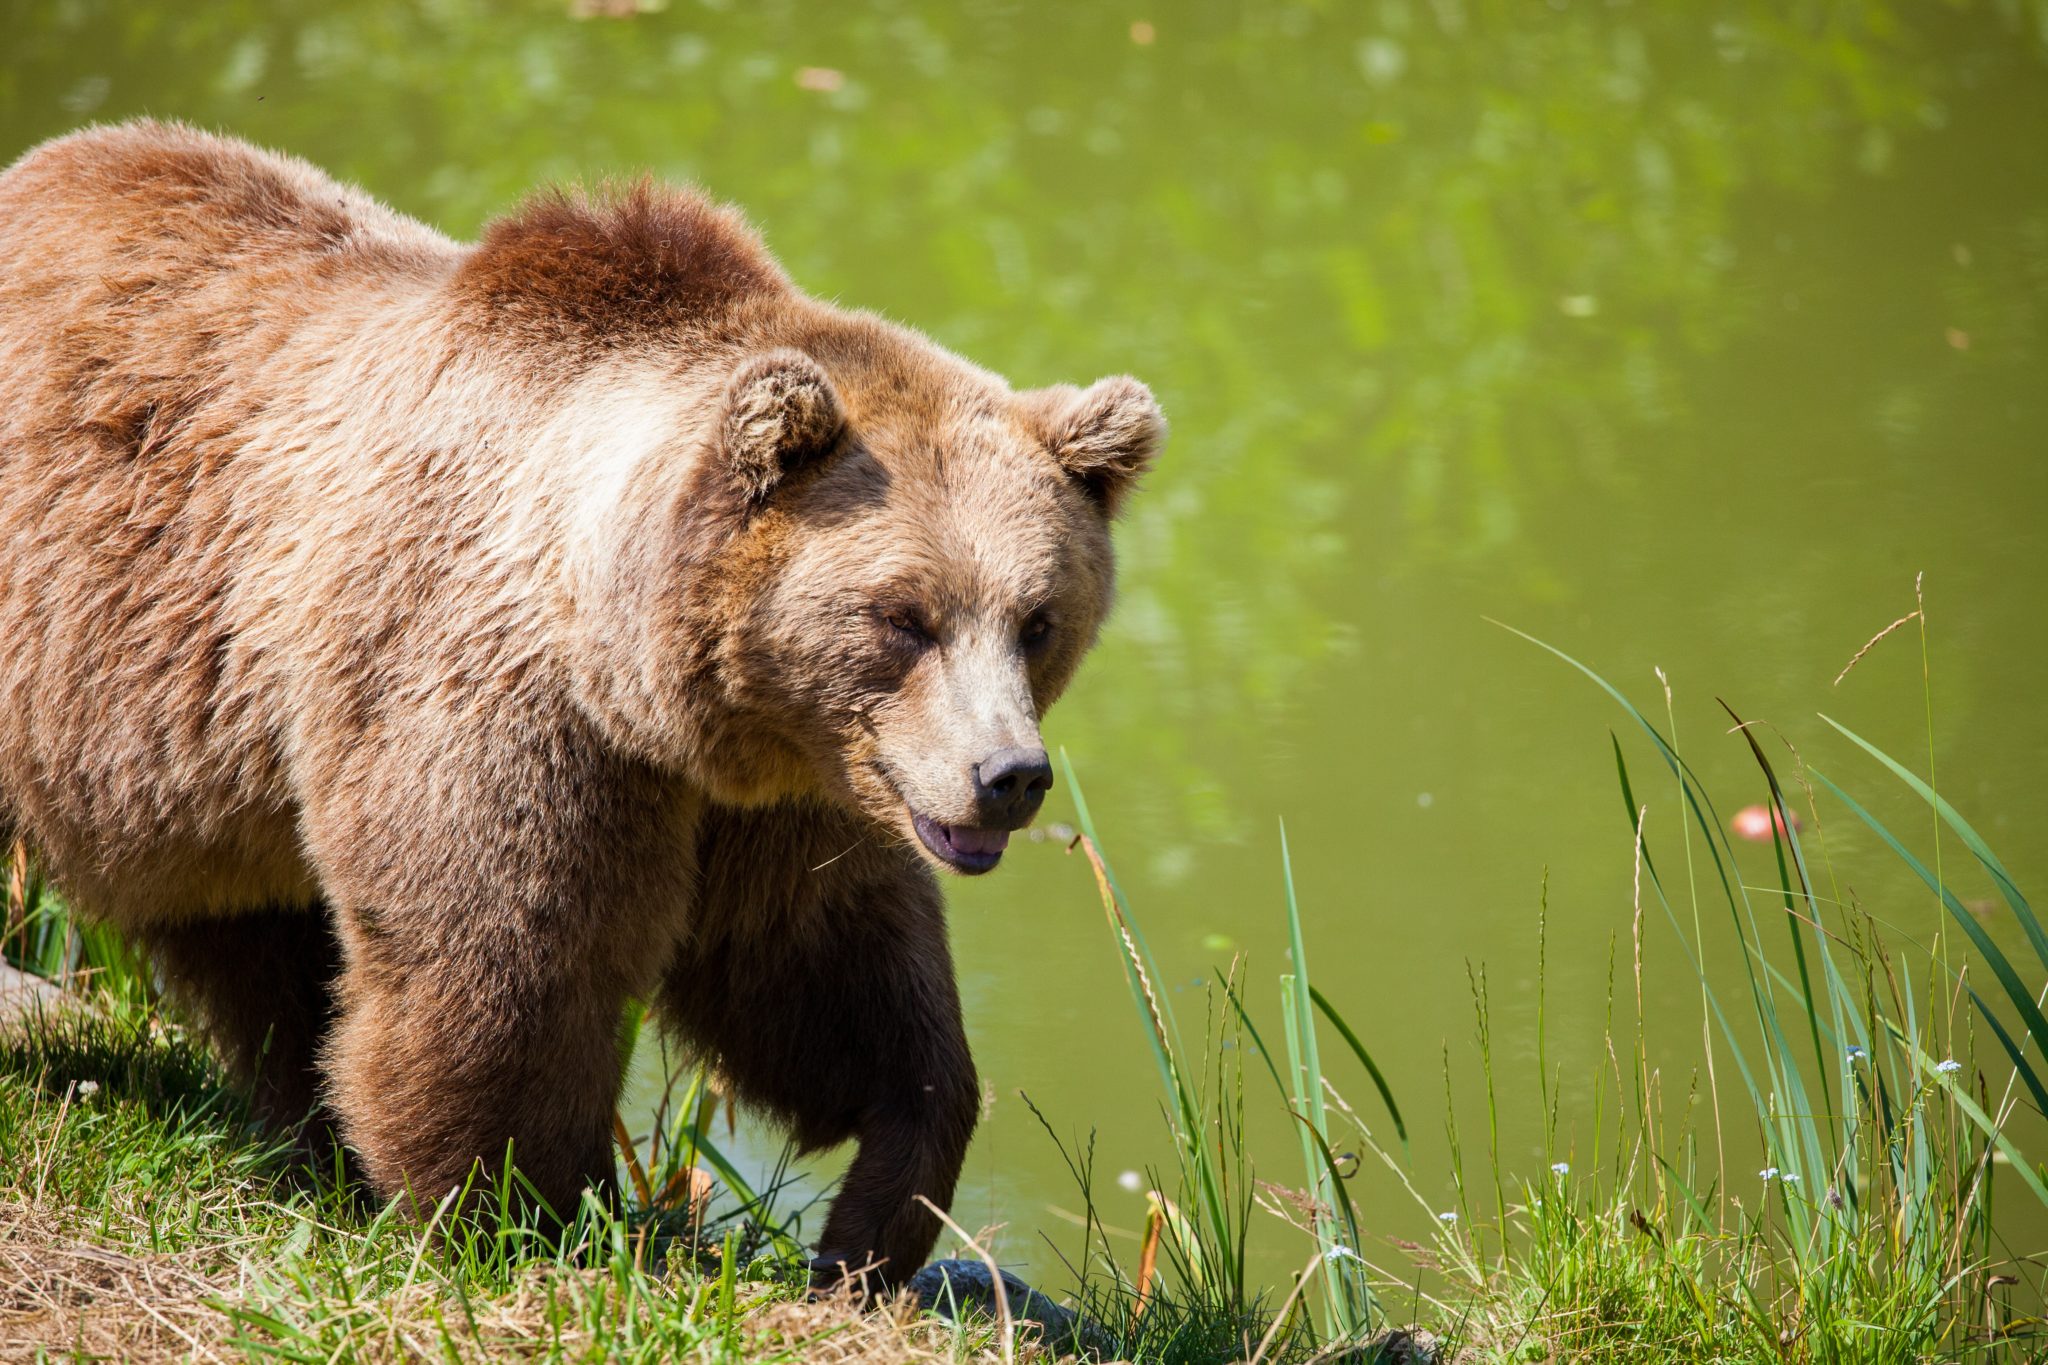 Bear watching safari - Slovenia4Seasons